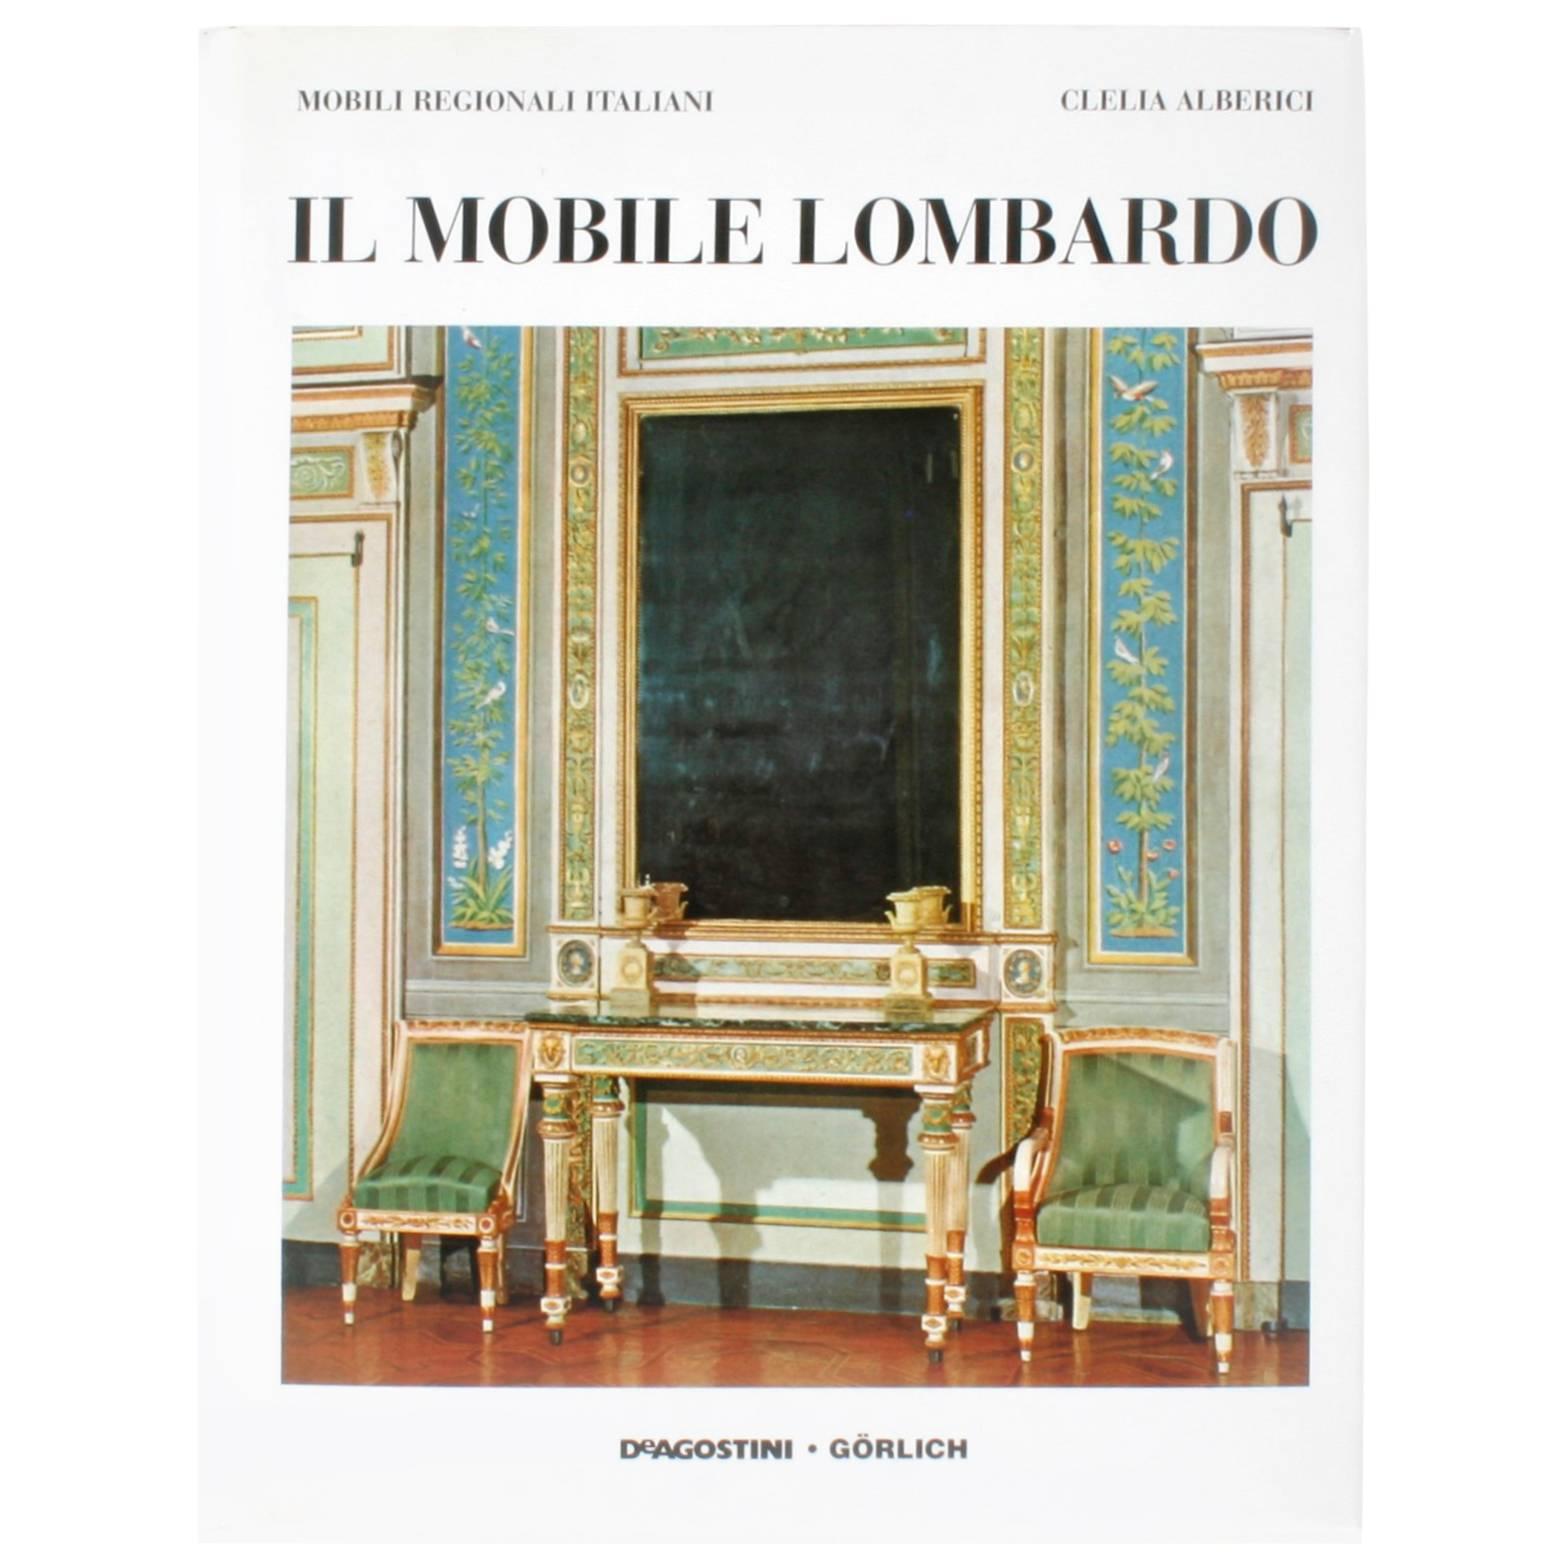 Il Mobile Lombardo by Clelia Alberici